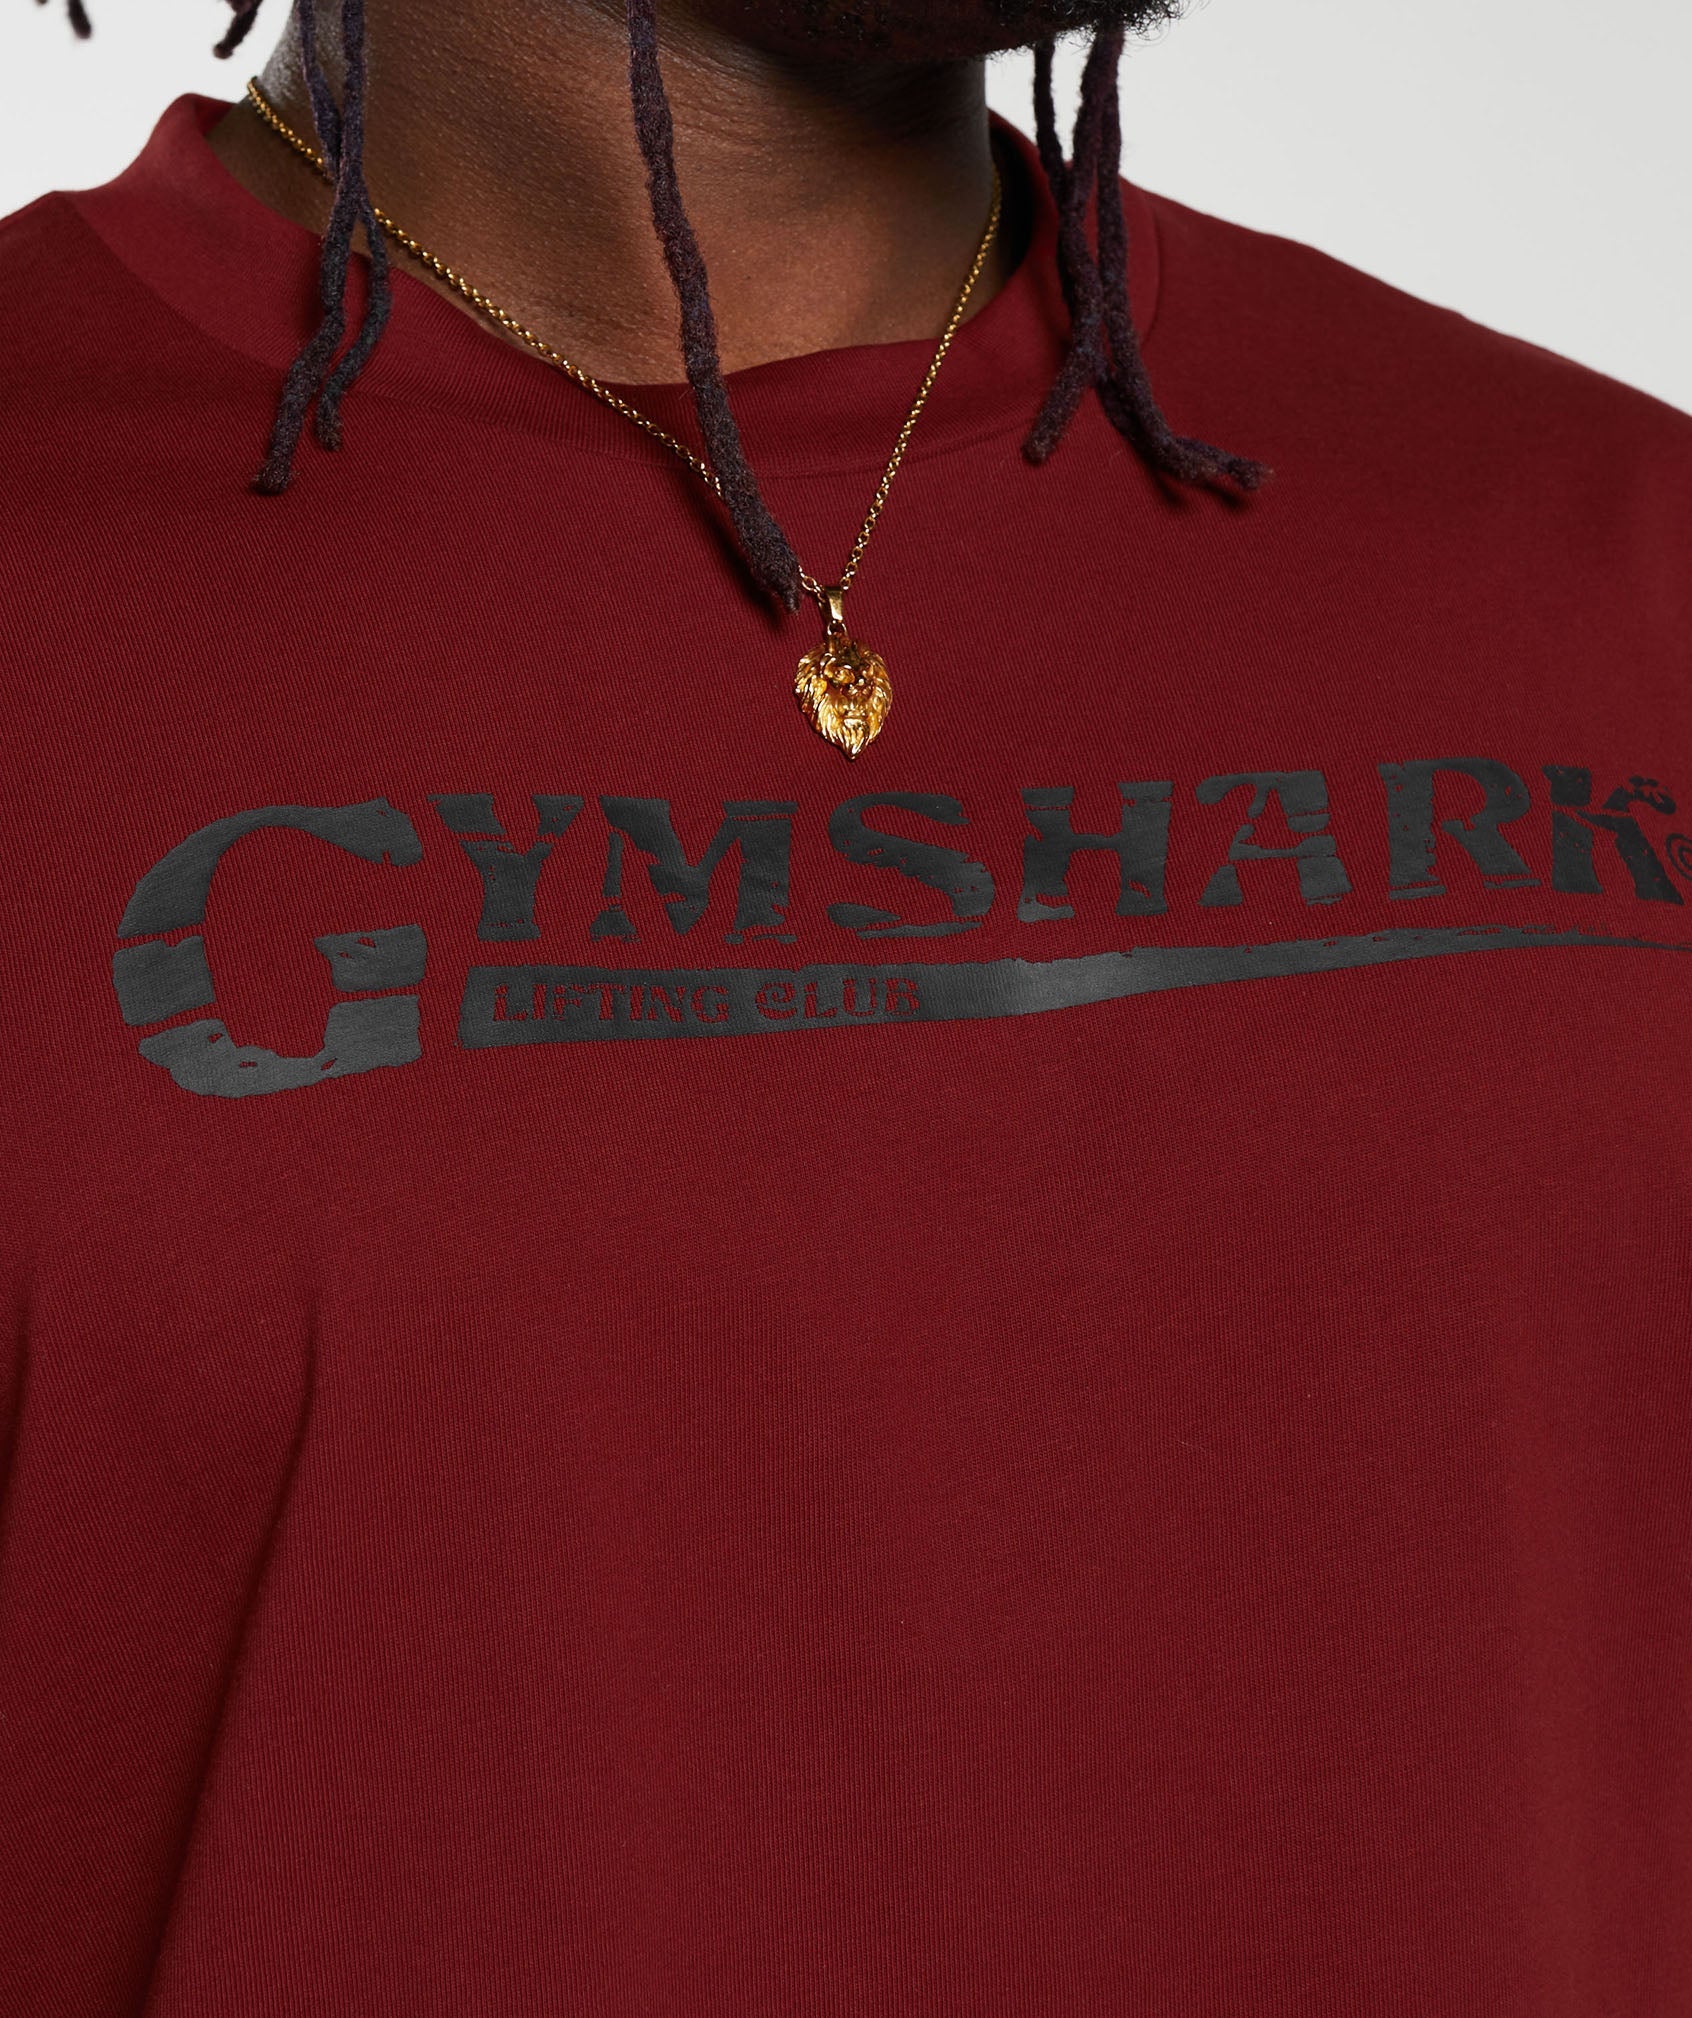 Gymshark Pump Cover T-Shirt - Linen Brown